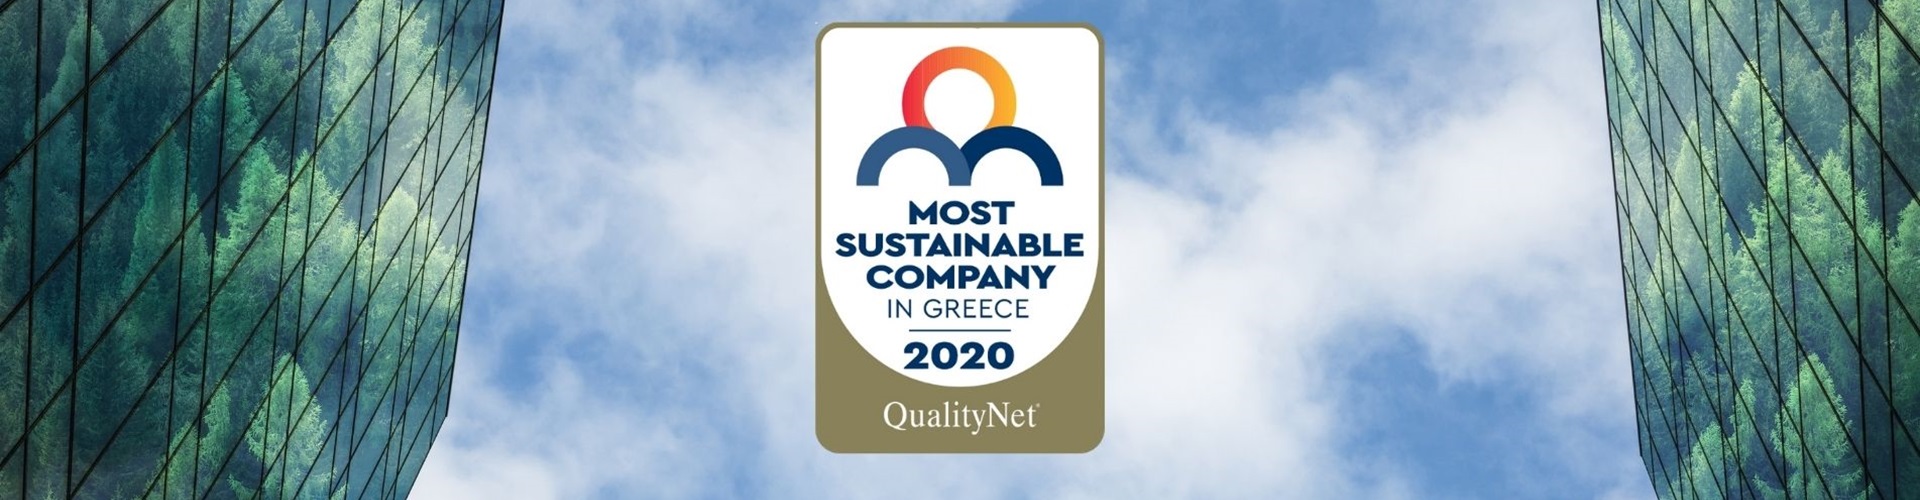 Most sustainable company award alumil